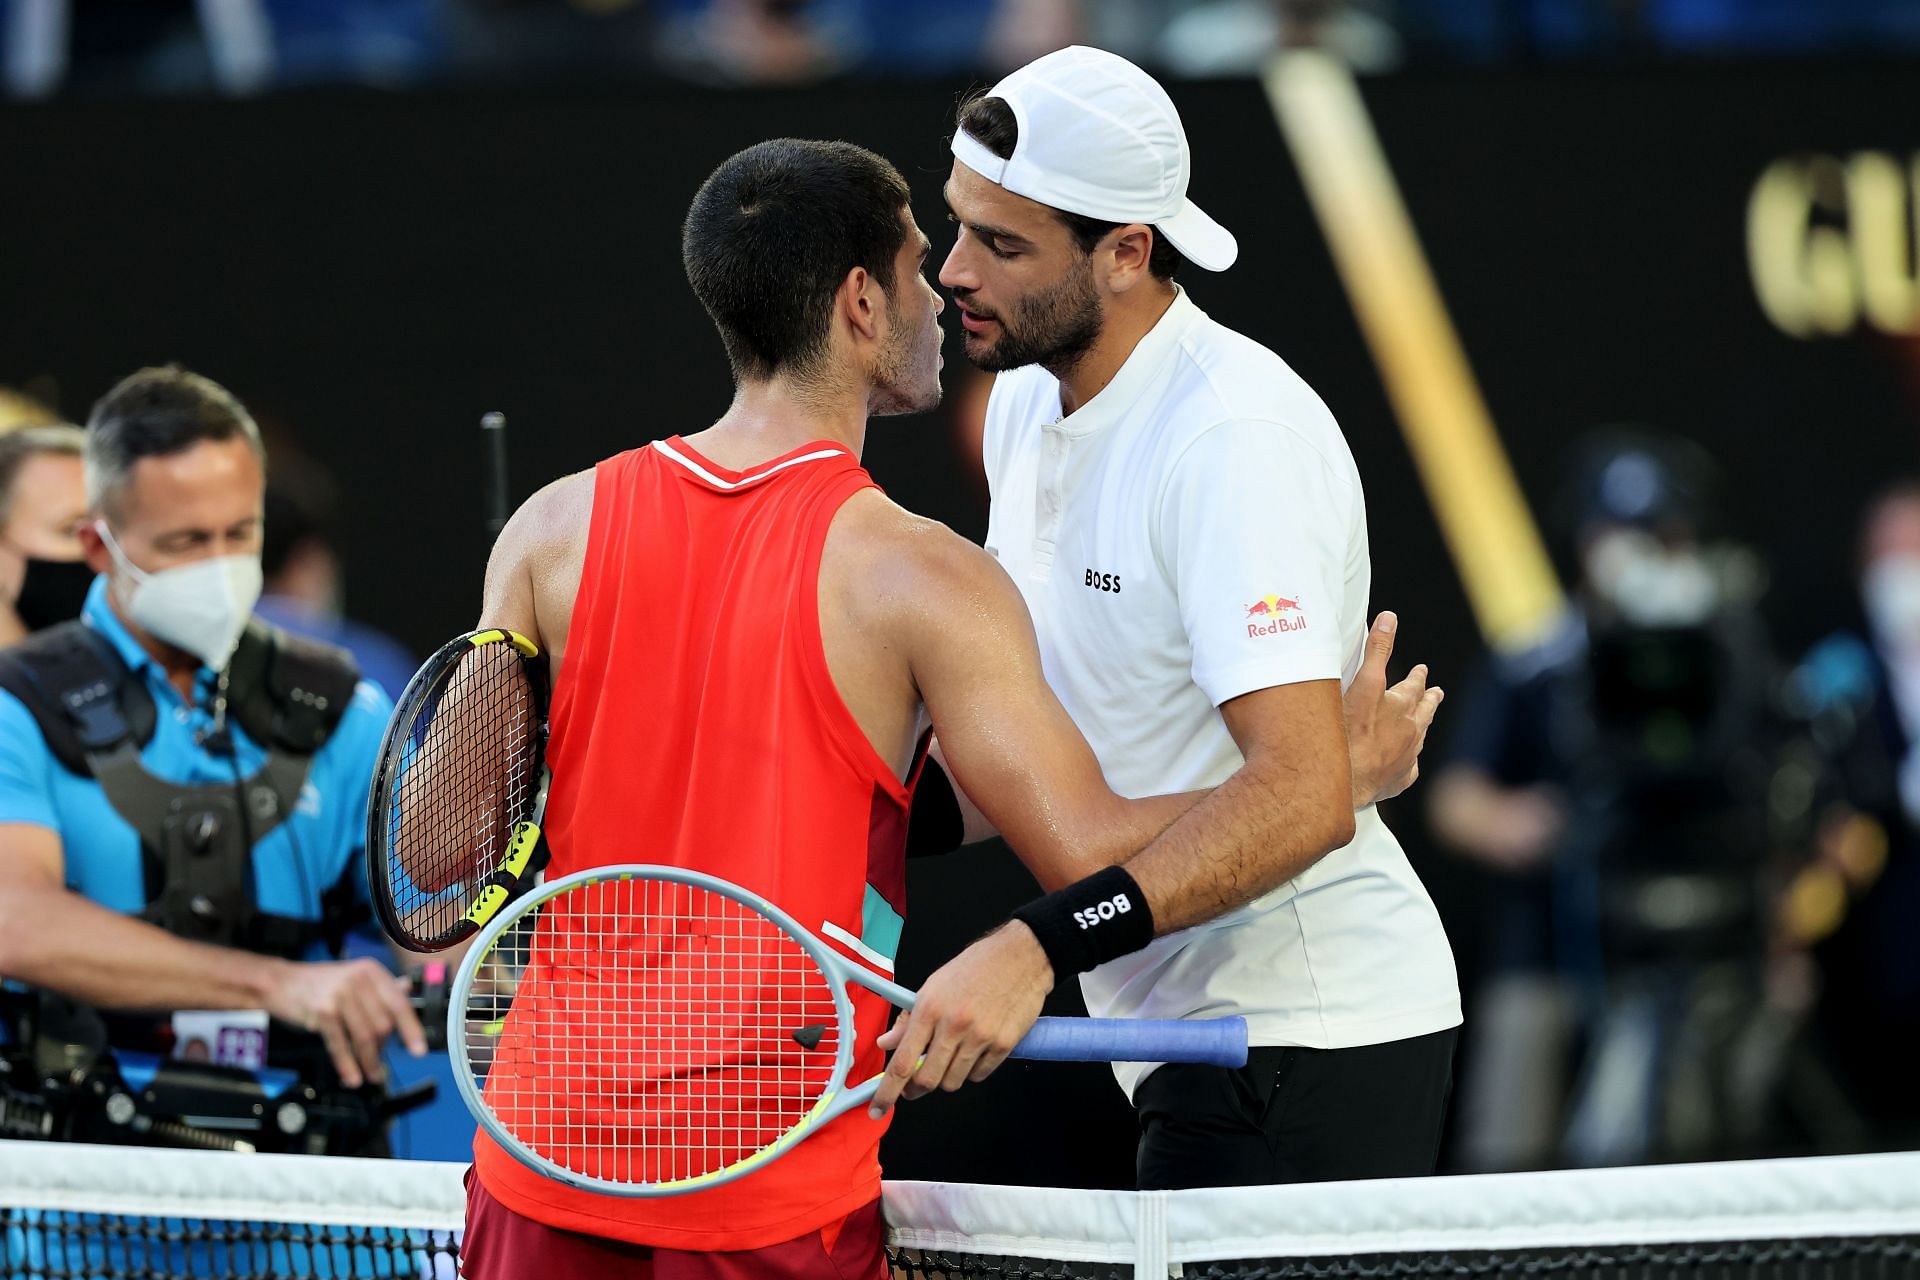 Berrettini beat Alcaraz in a thrilling encounter at the Australian Open